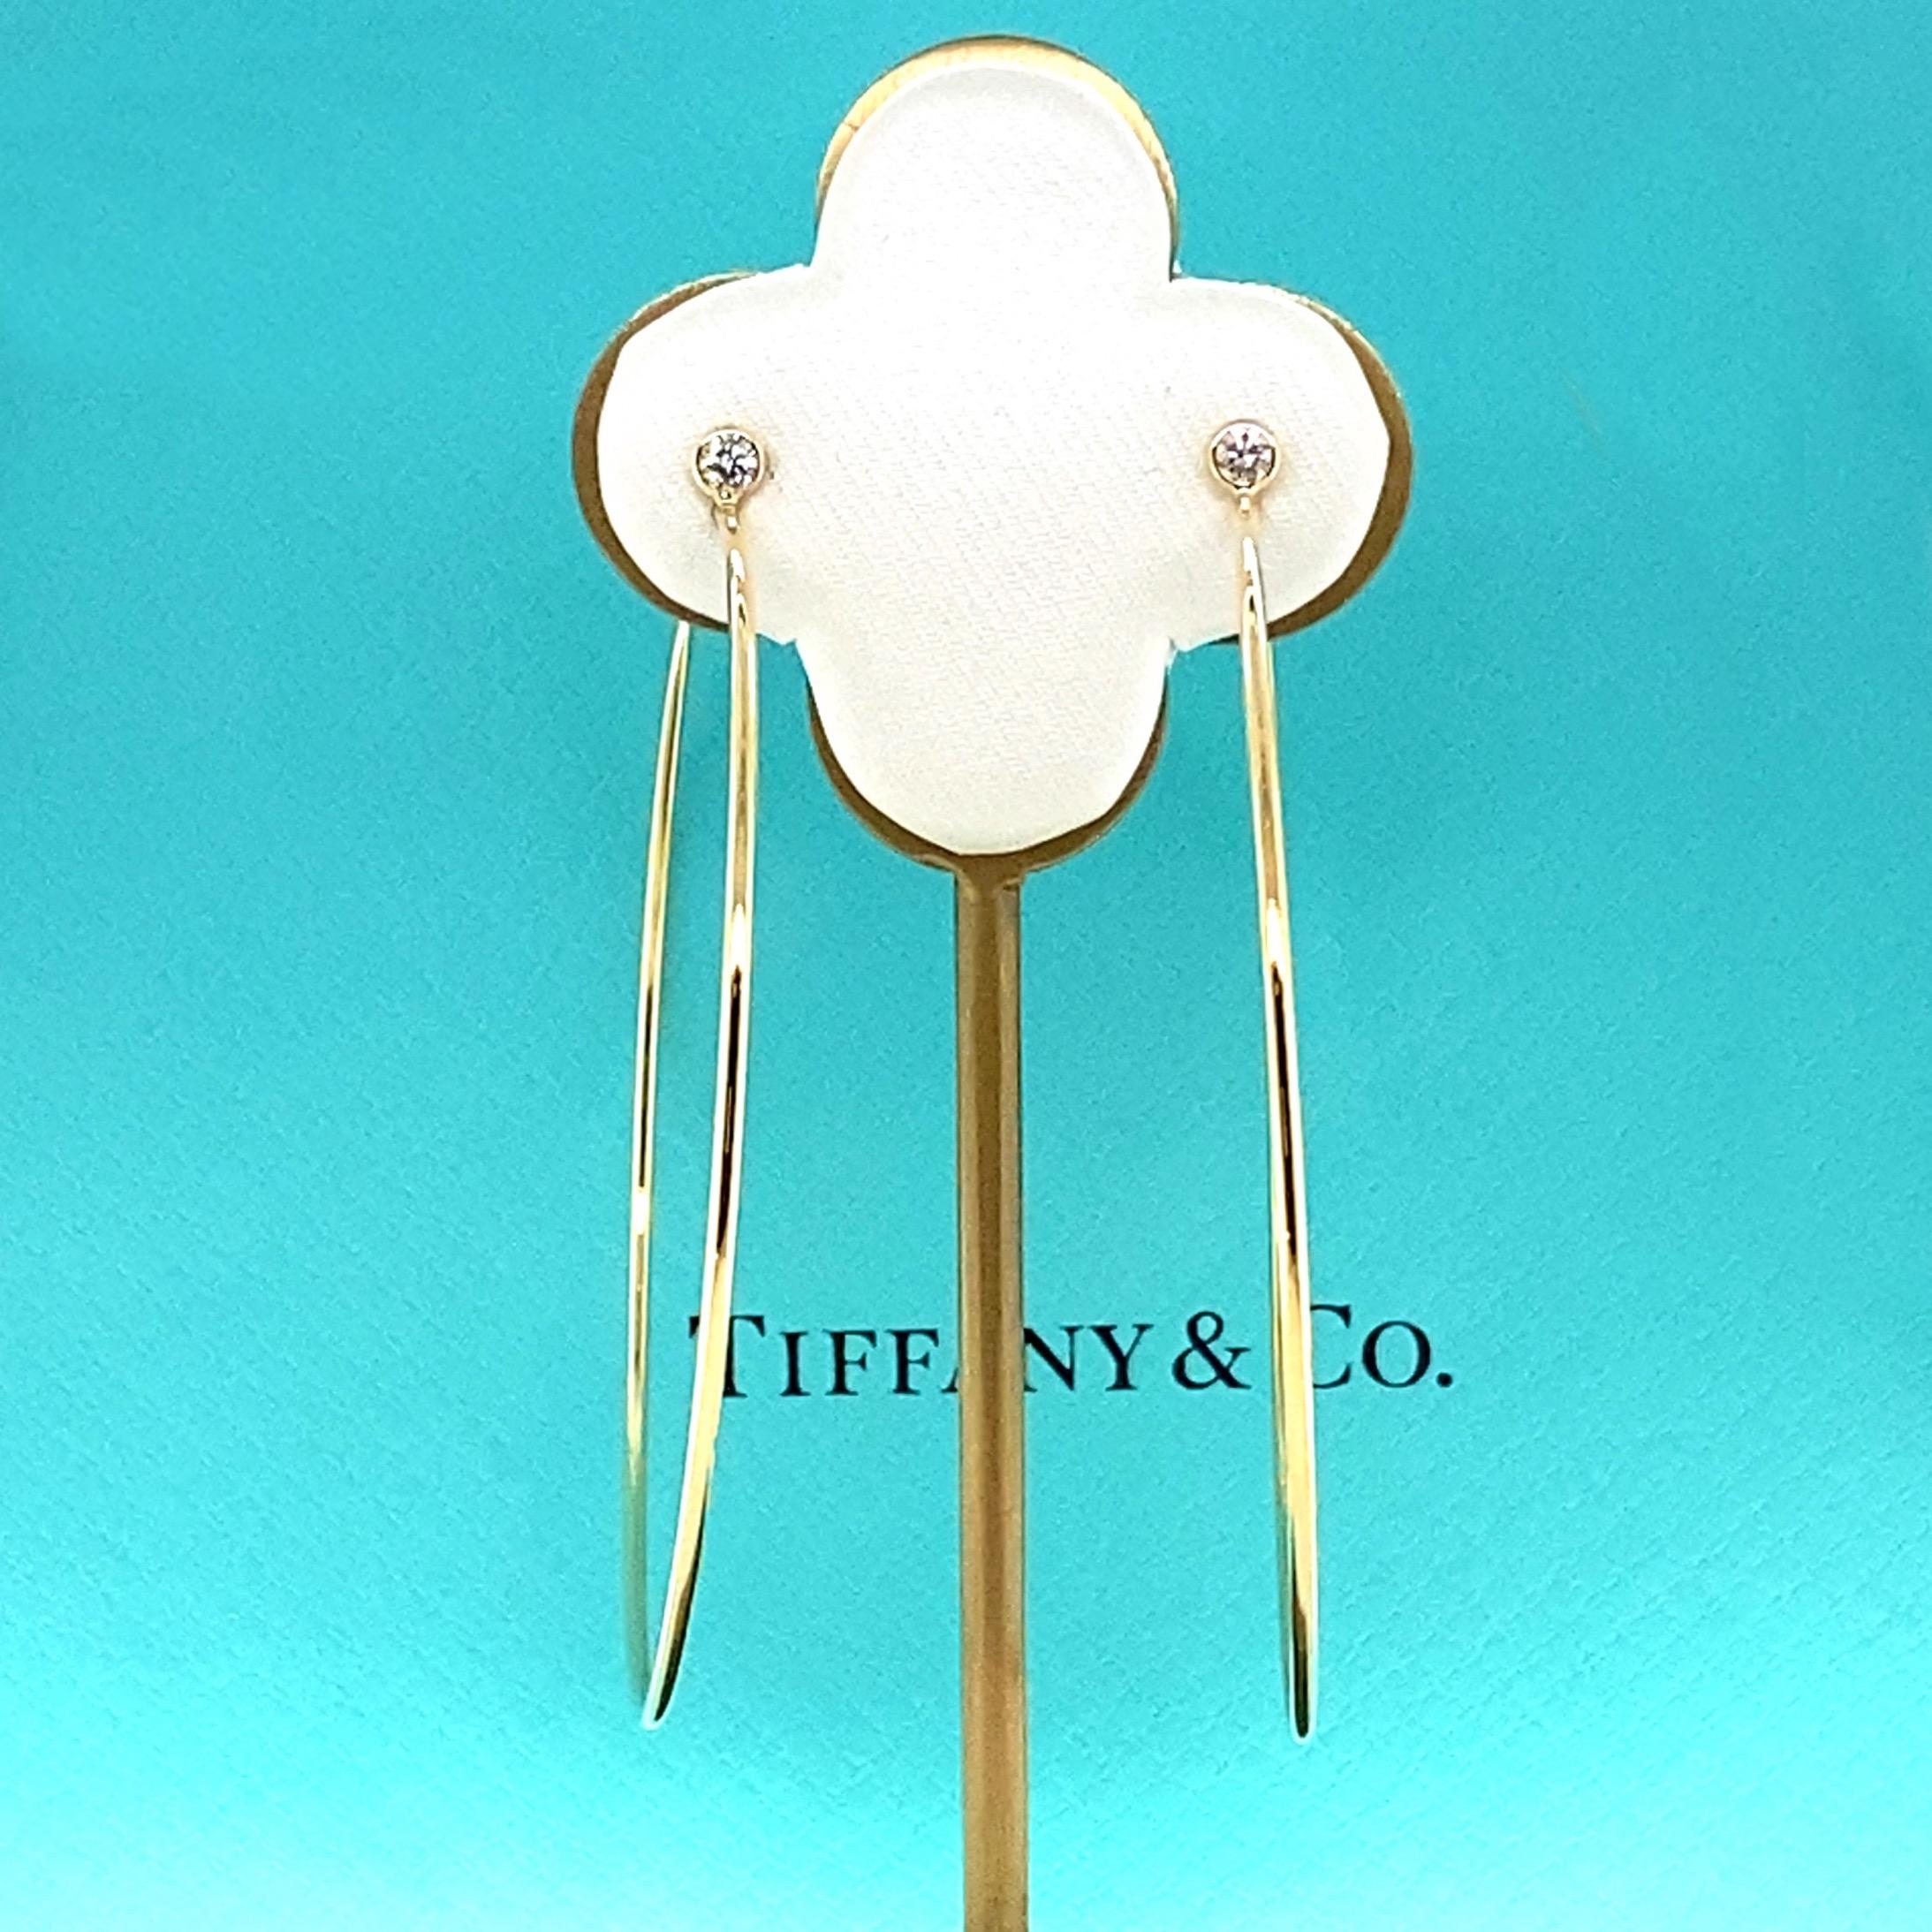 Tiffany & Co. Elsa Peretti Diamond Hoop Earrings in 18kt Yellow Gold Size Large 4